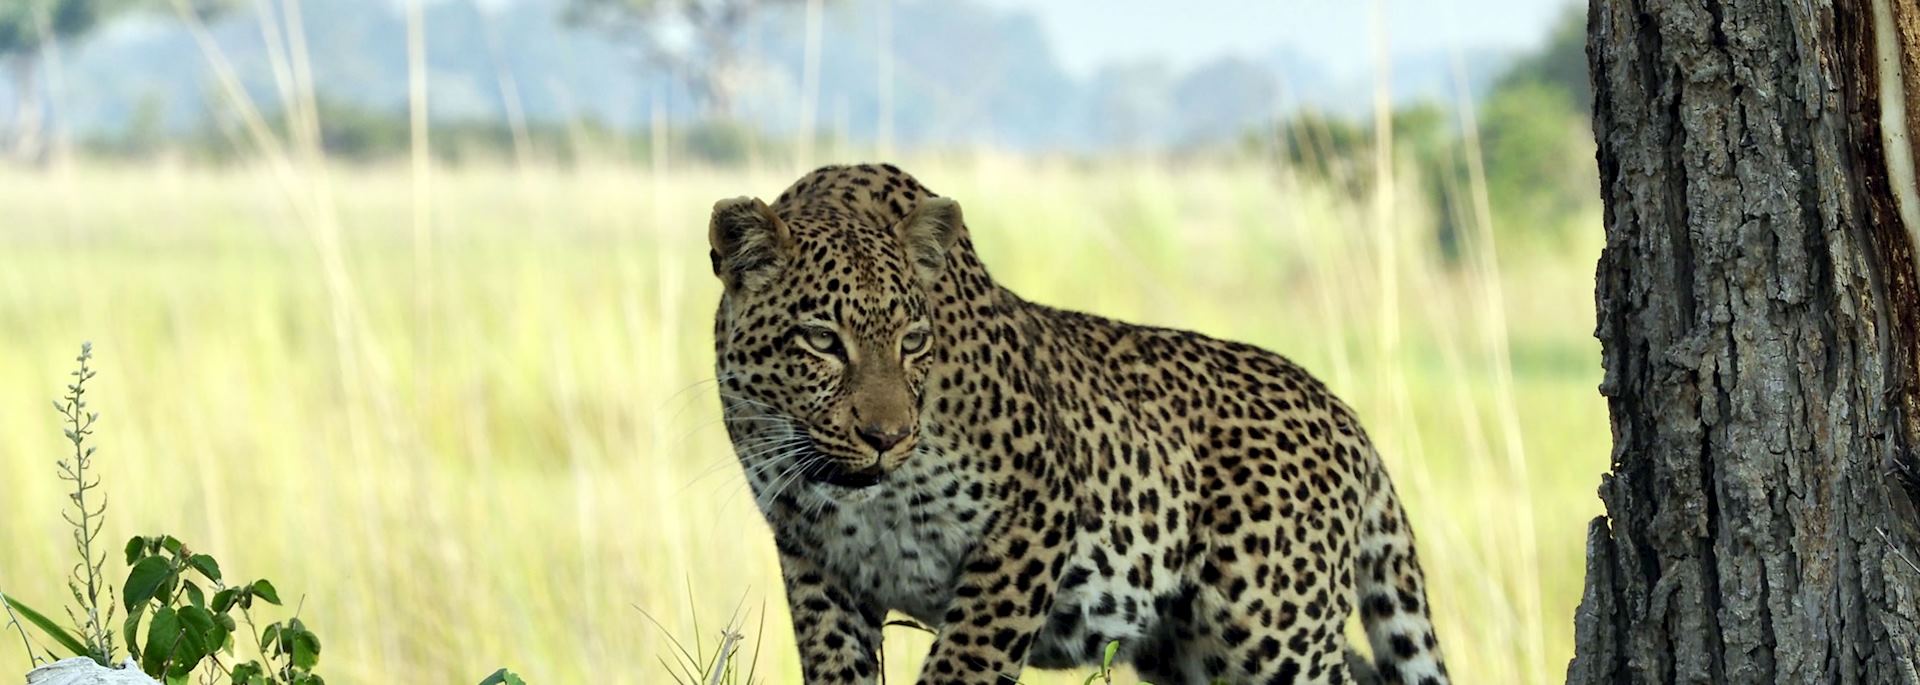 Leopard, Vumbura Concession